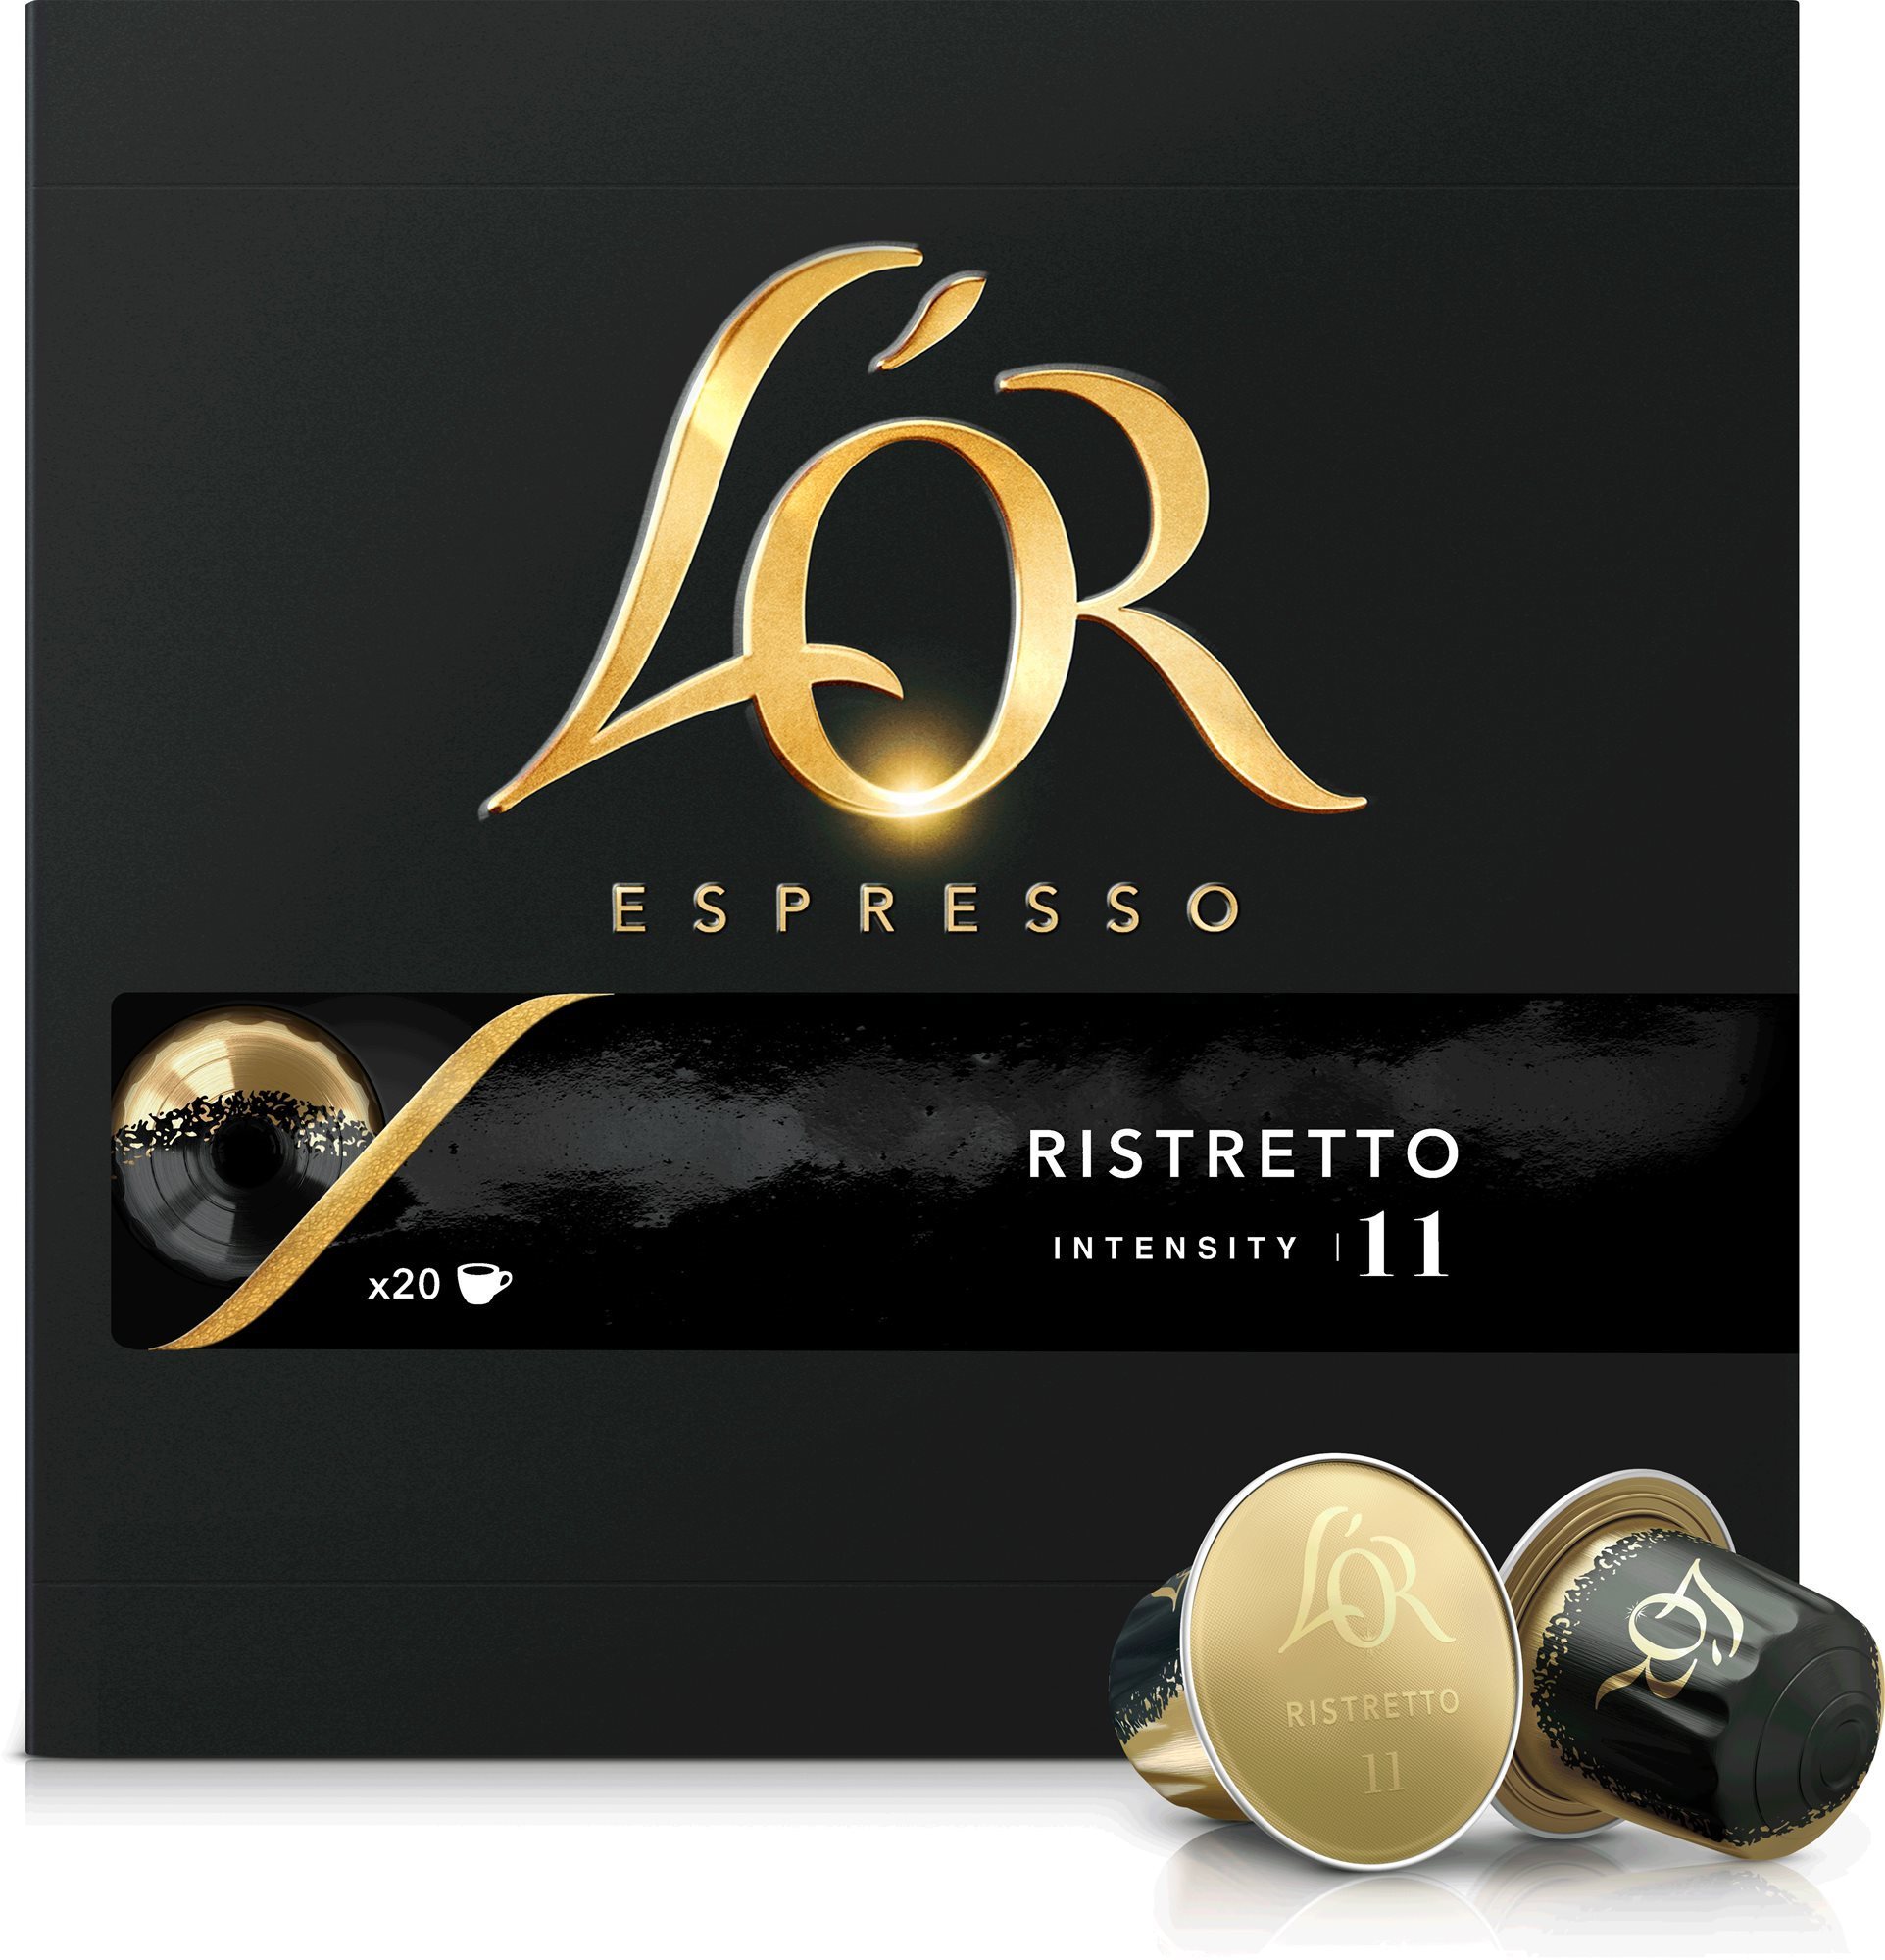 L'OR Espresso Ristretto 20 db, alumínium